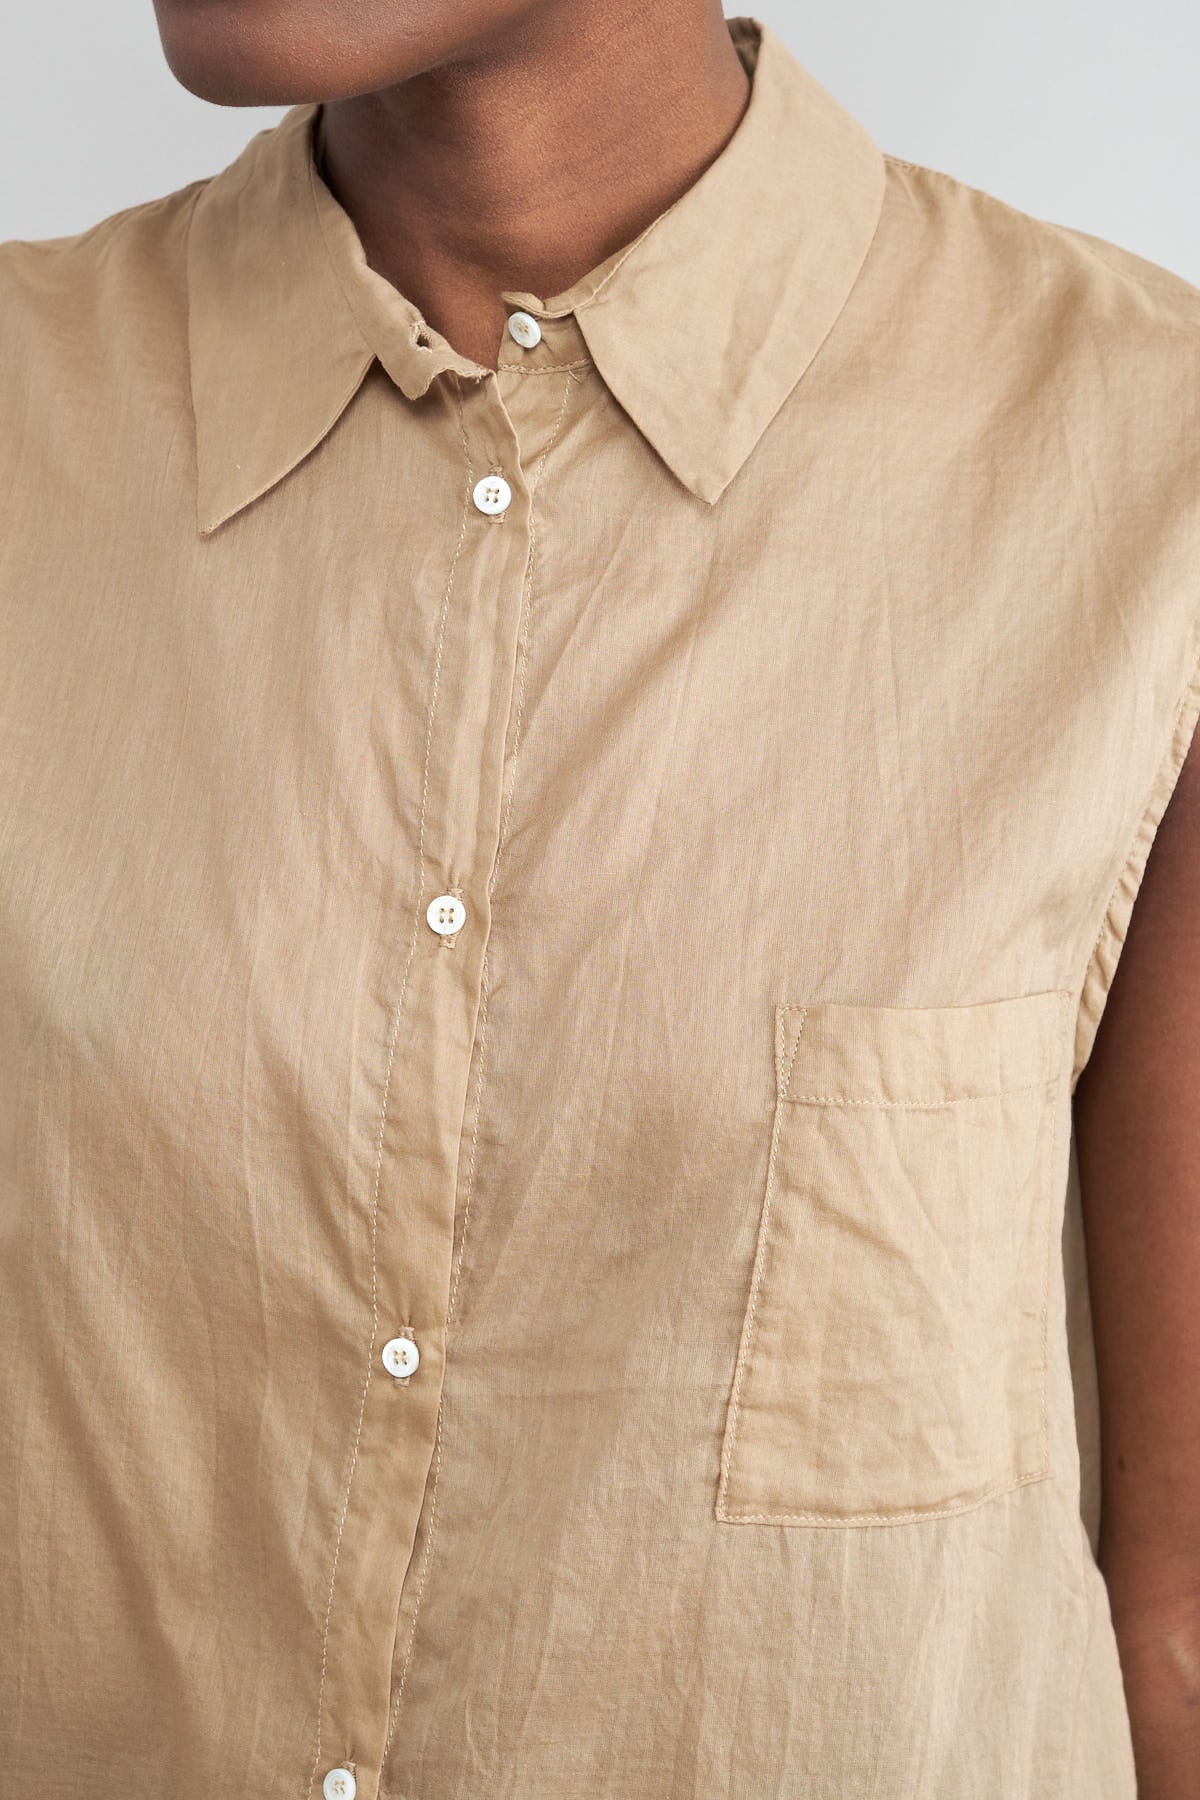 Pocket on Idée Shirt in Camel